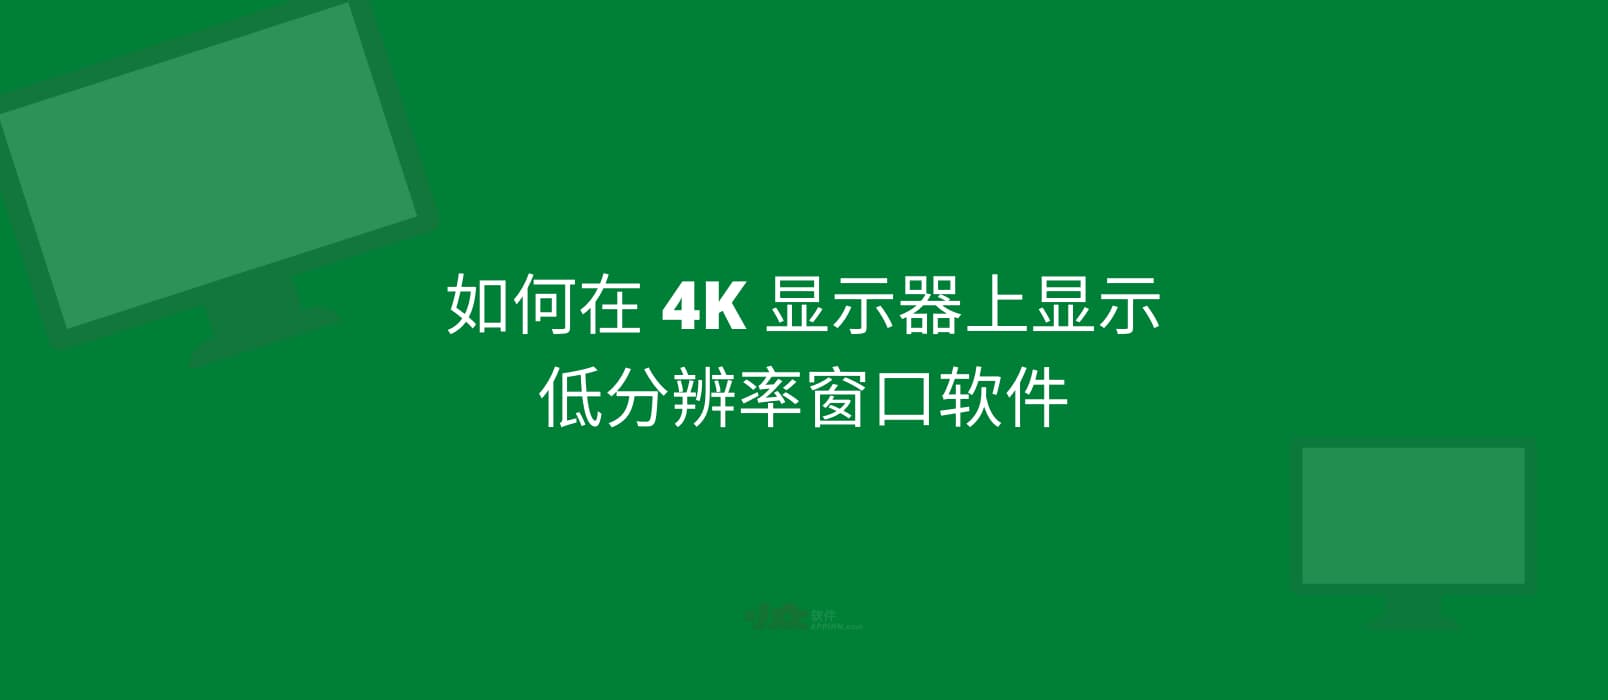 如何在 4K 显示器上显示低分辨率窗口软件？ 1